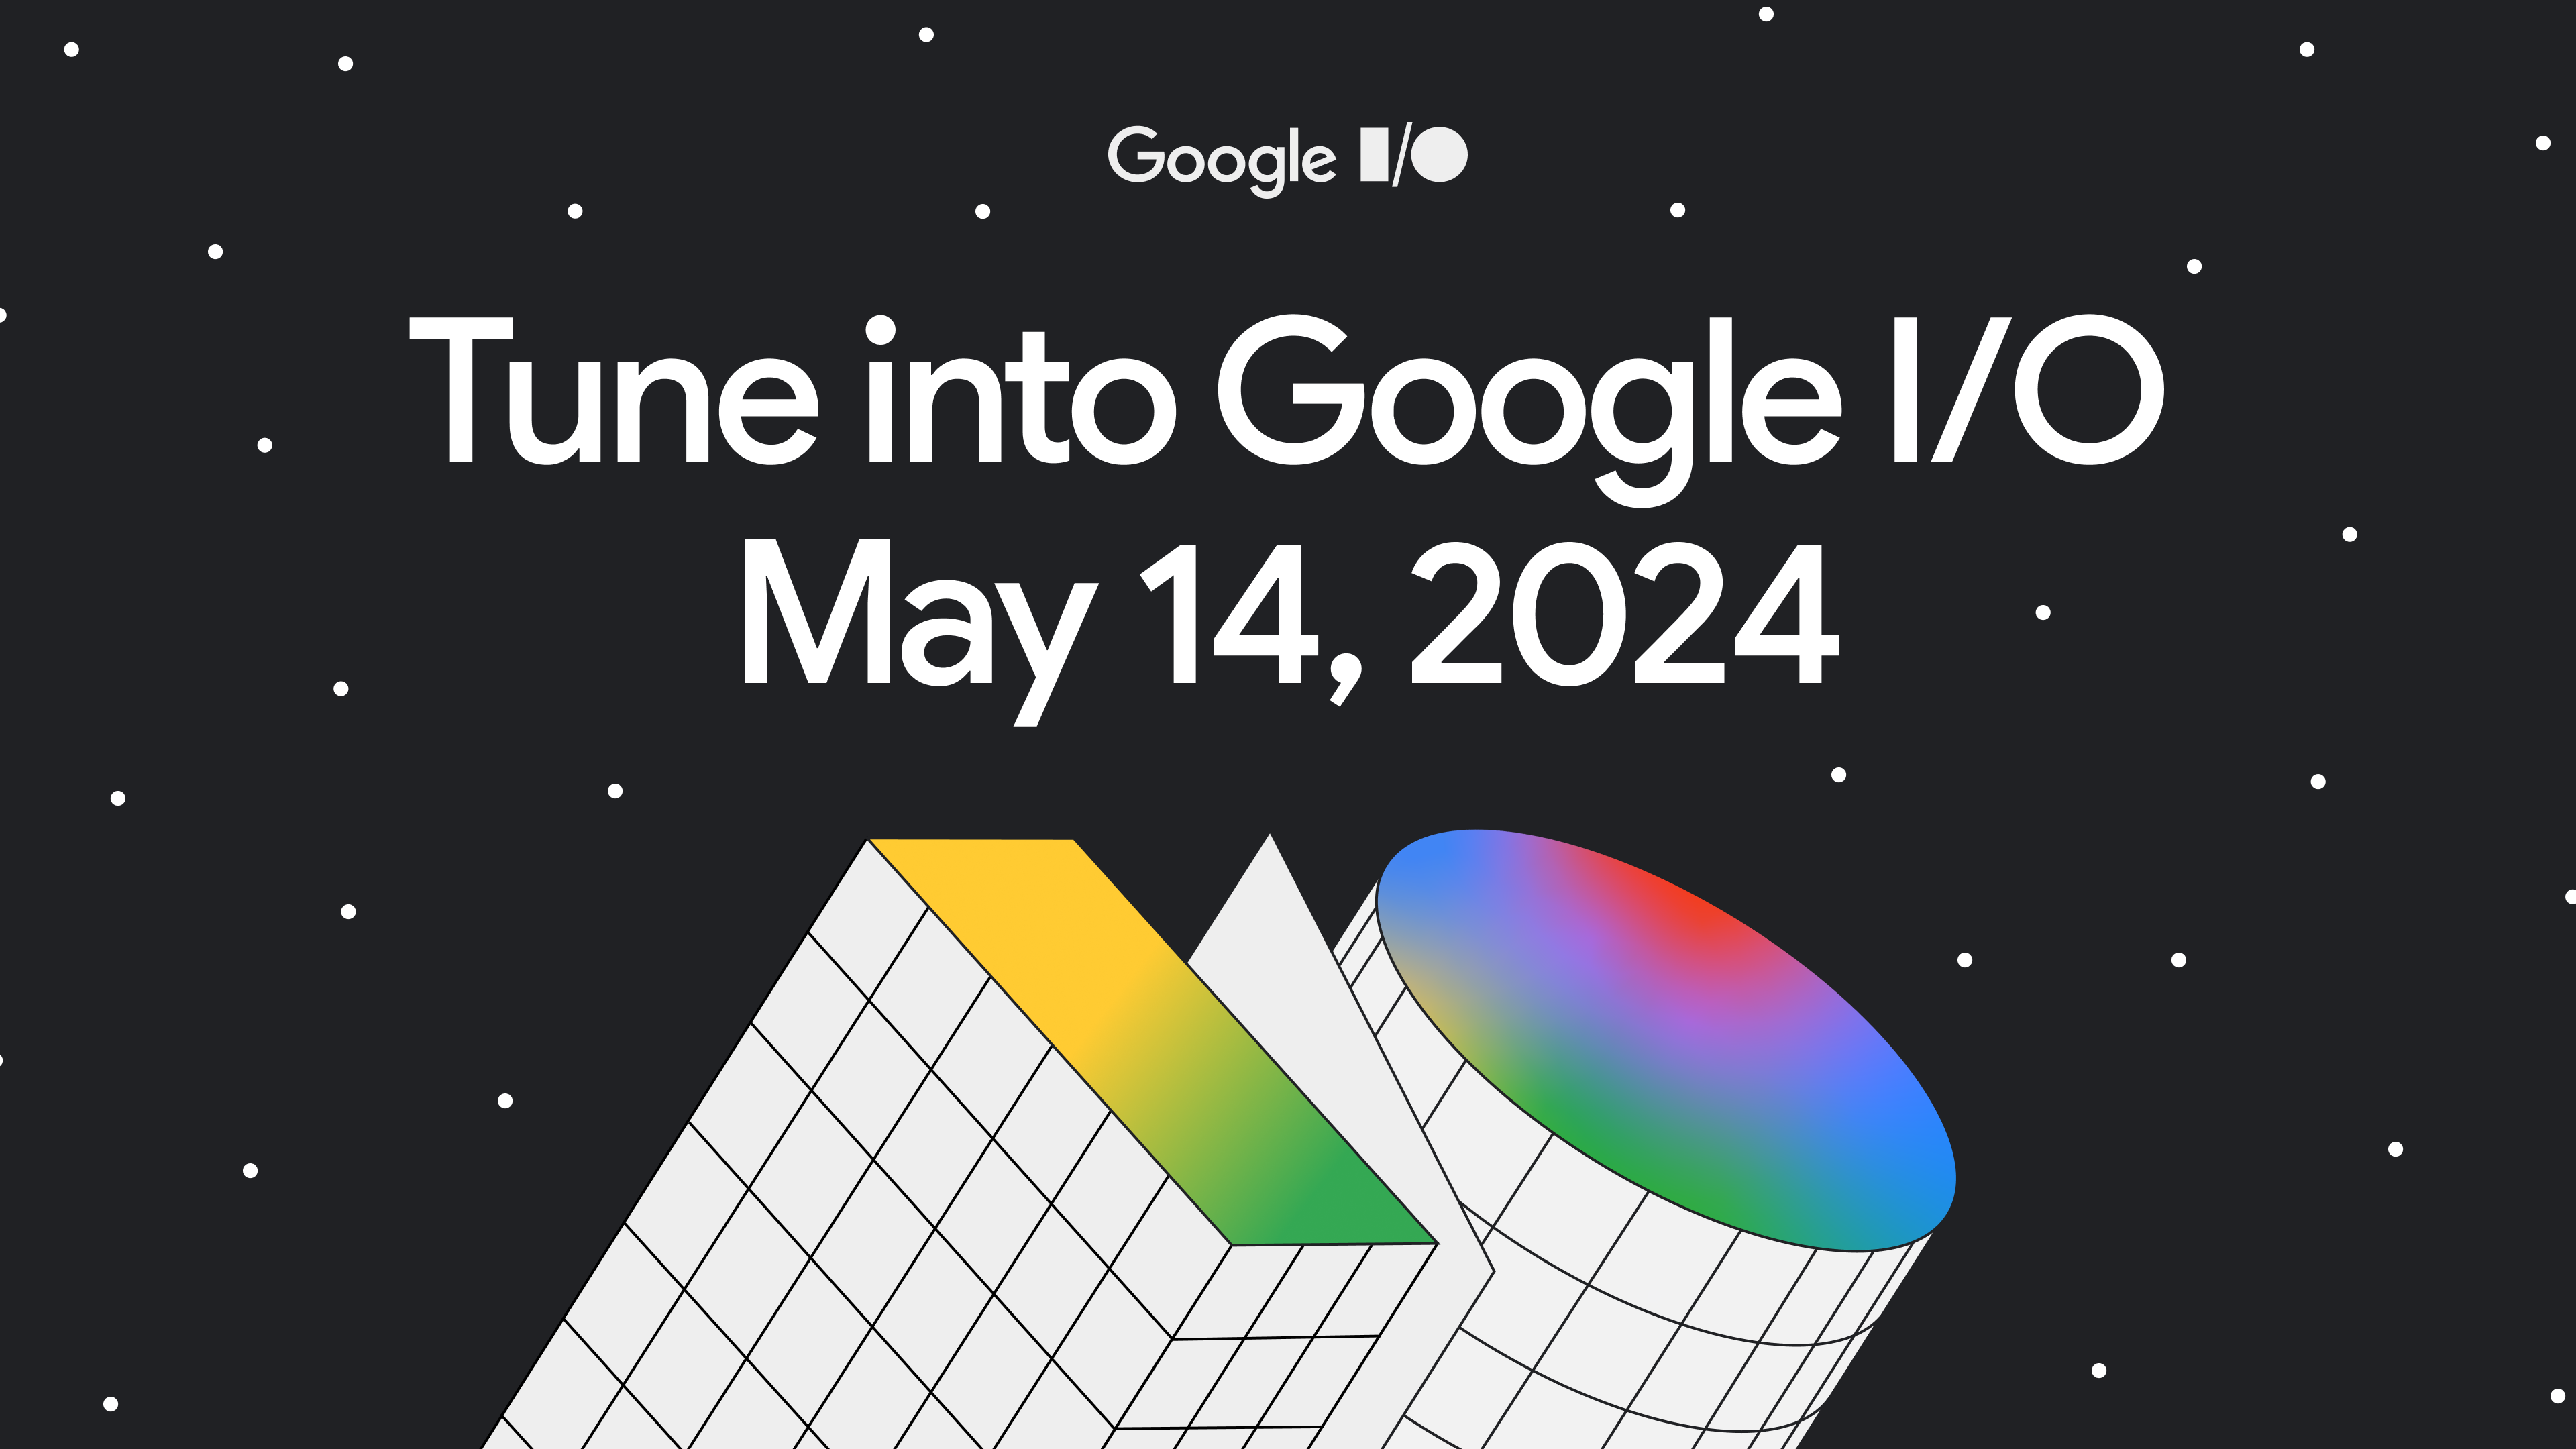 काले रंग के बैकग्राउंड की इमेज, जिसमें रंगीन ज्यामितीय आकृतियों वाली रंगीन आकृतियां हैं. बैनर में यह टेक्स्ट शामिल है: &#39;Google I/O में ट्यून करें. 14 मई, 2024&#39;